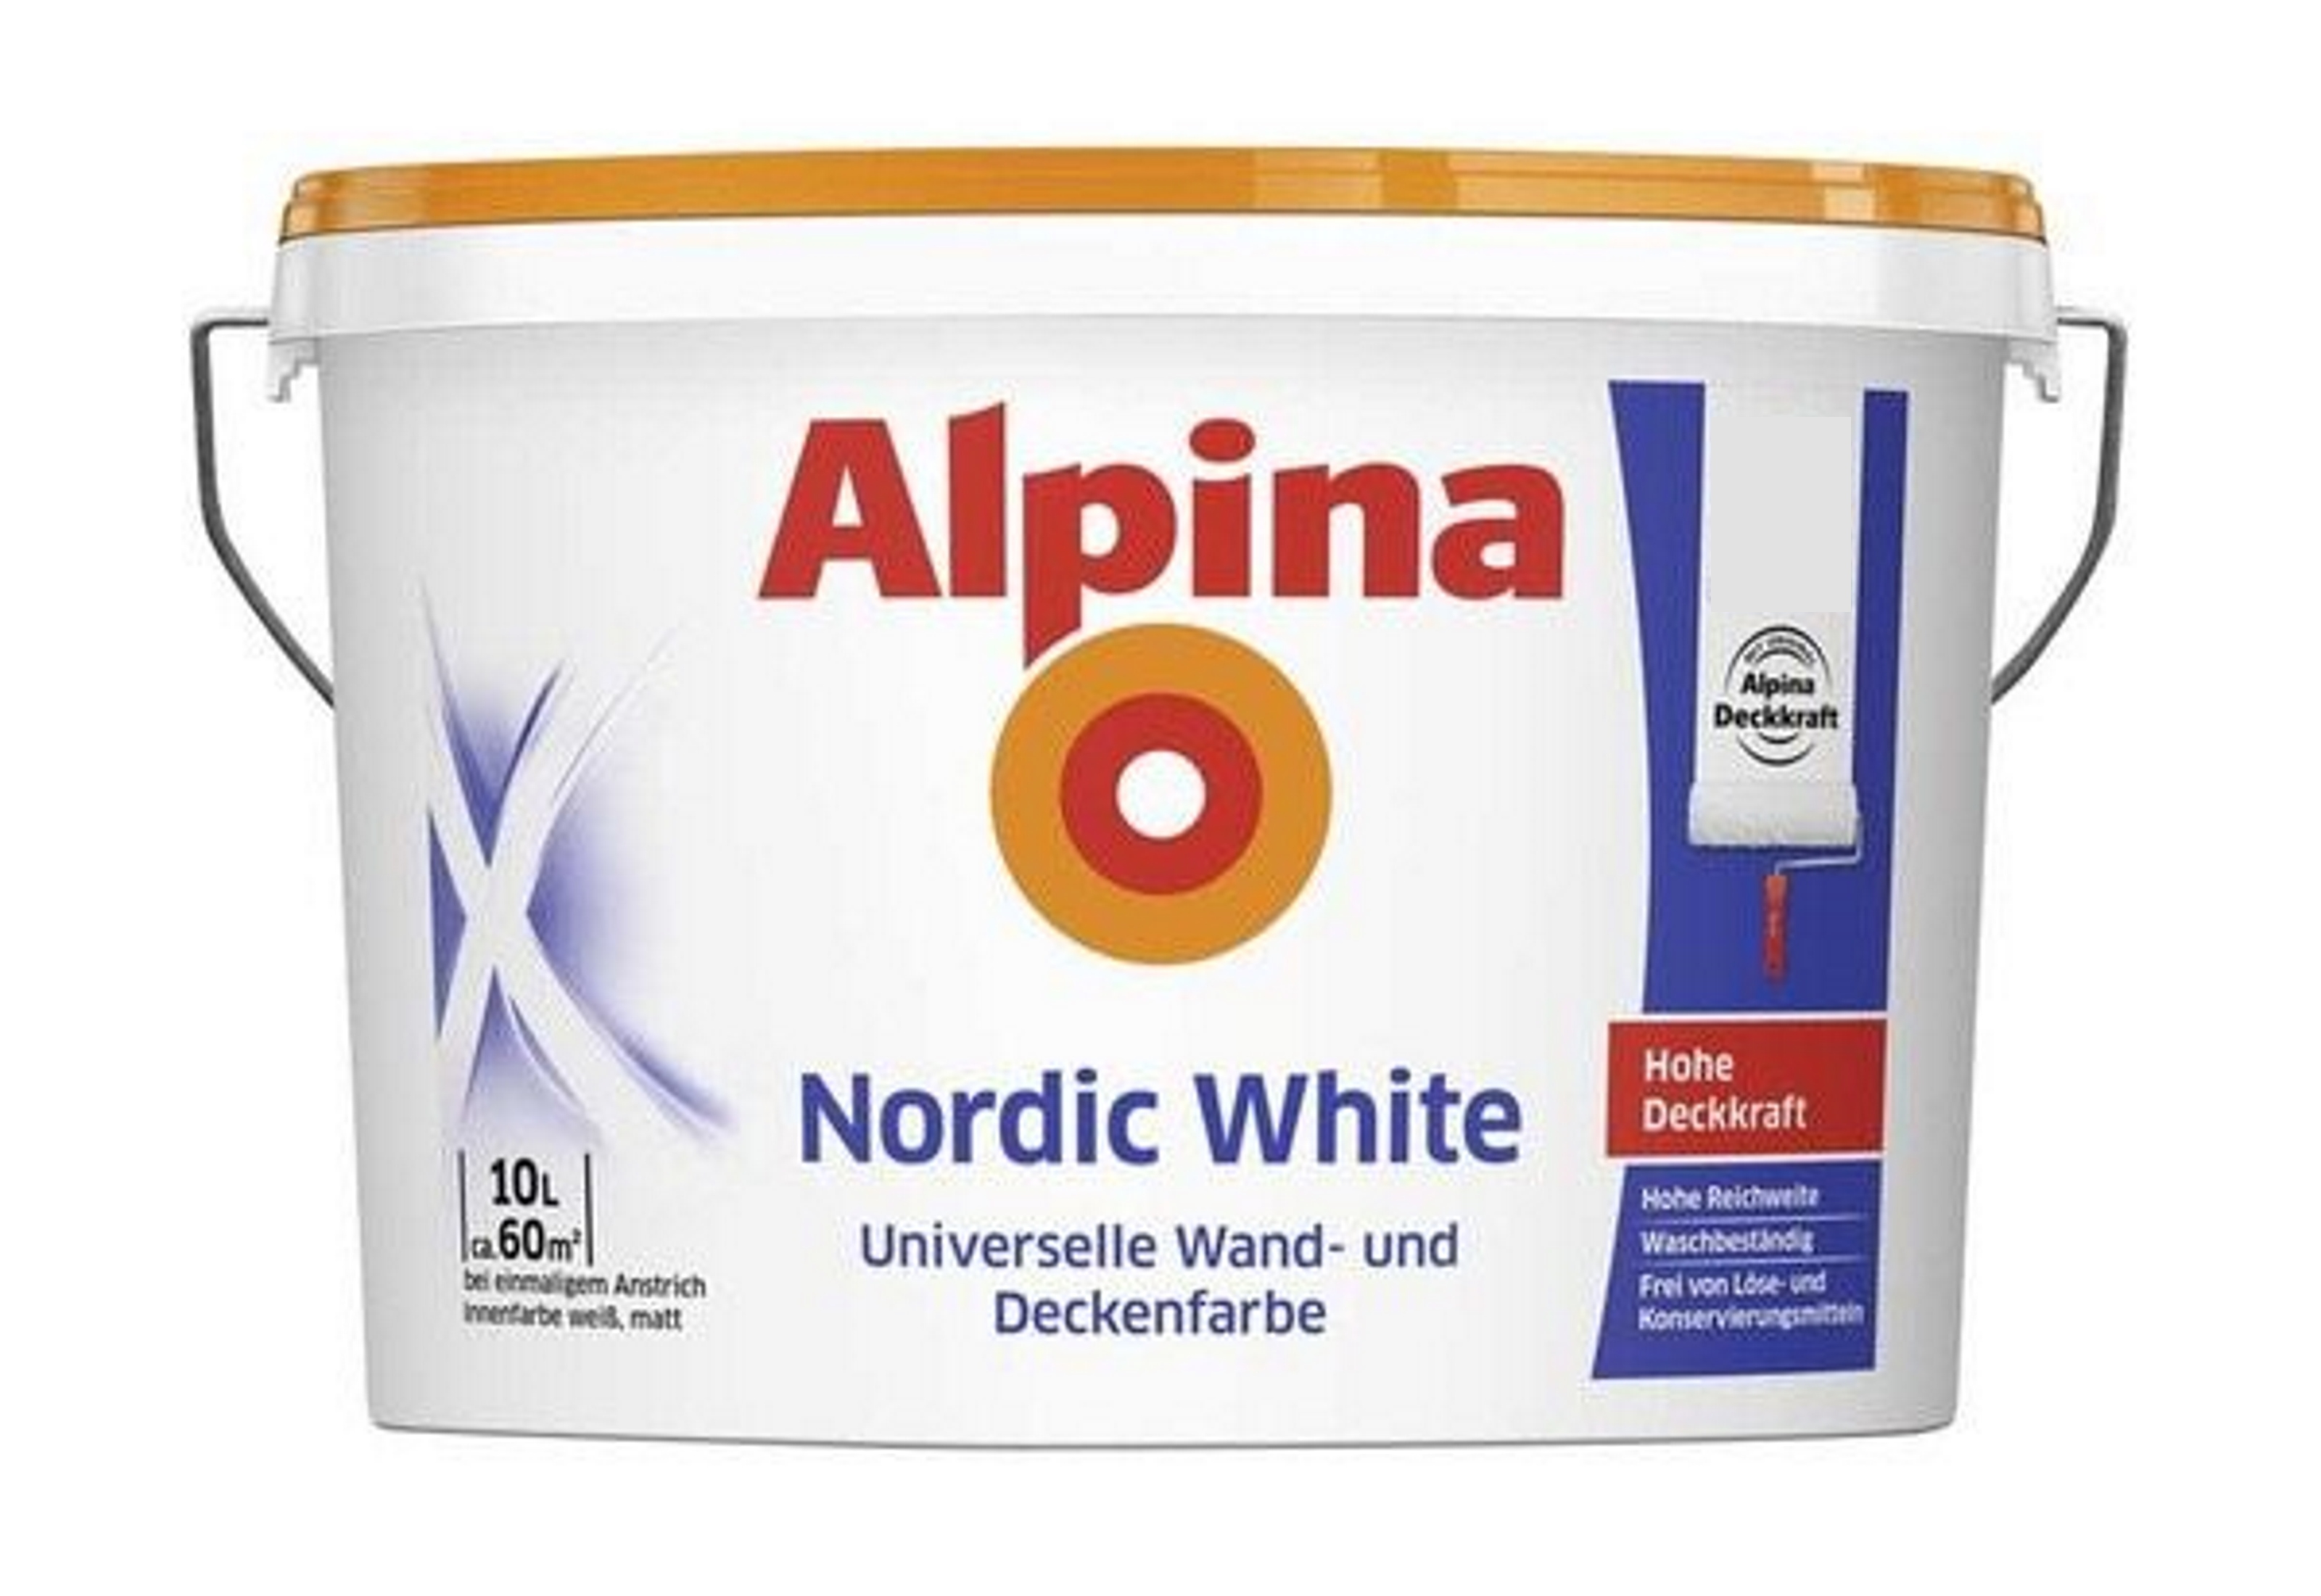 Alpina Feine Farben edelmatter Lack für Innen 750 ml Farbwahl 